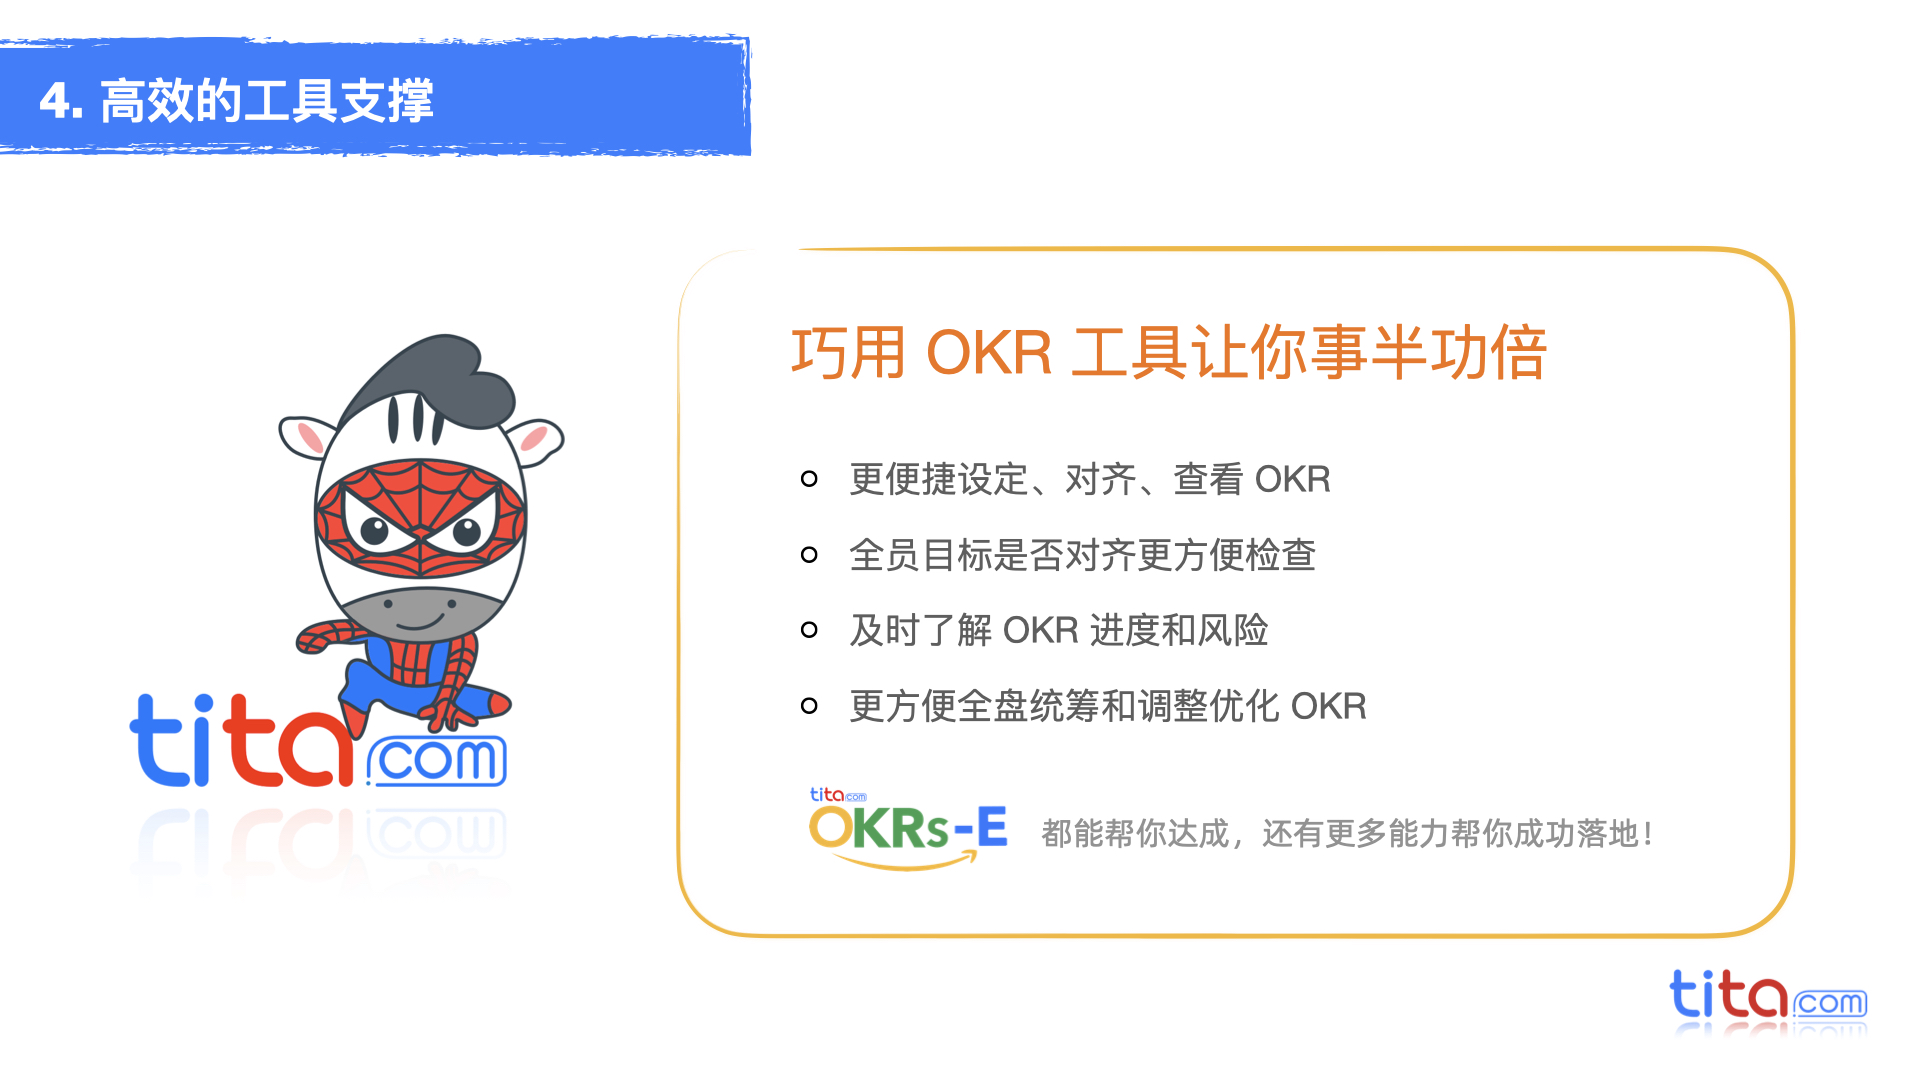 《OKR目标管理平台》产品介绍 @2021